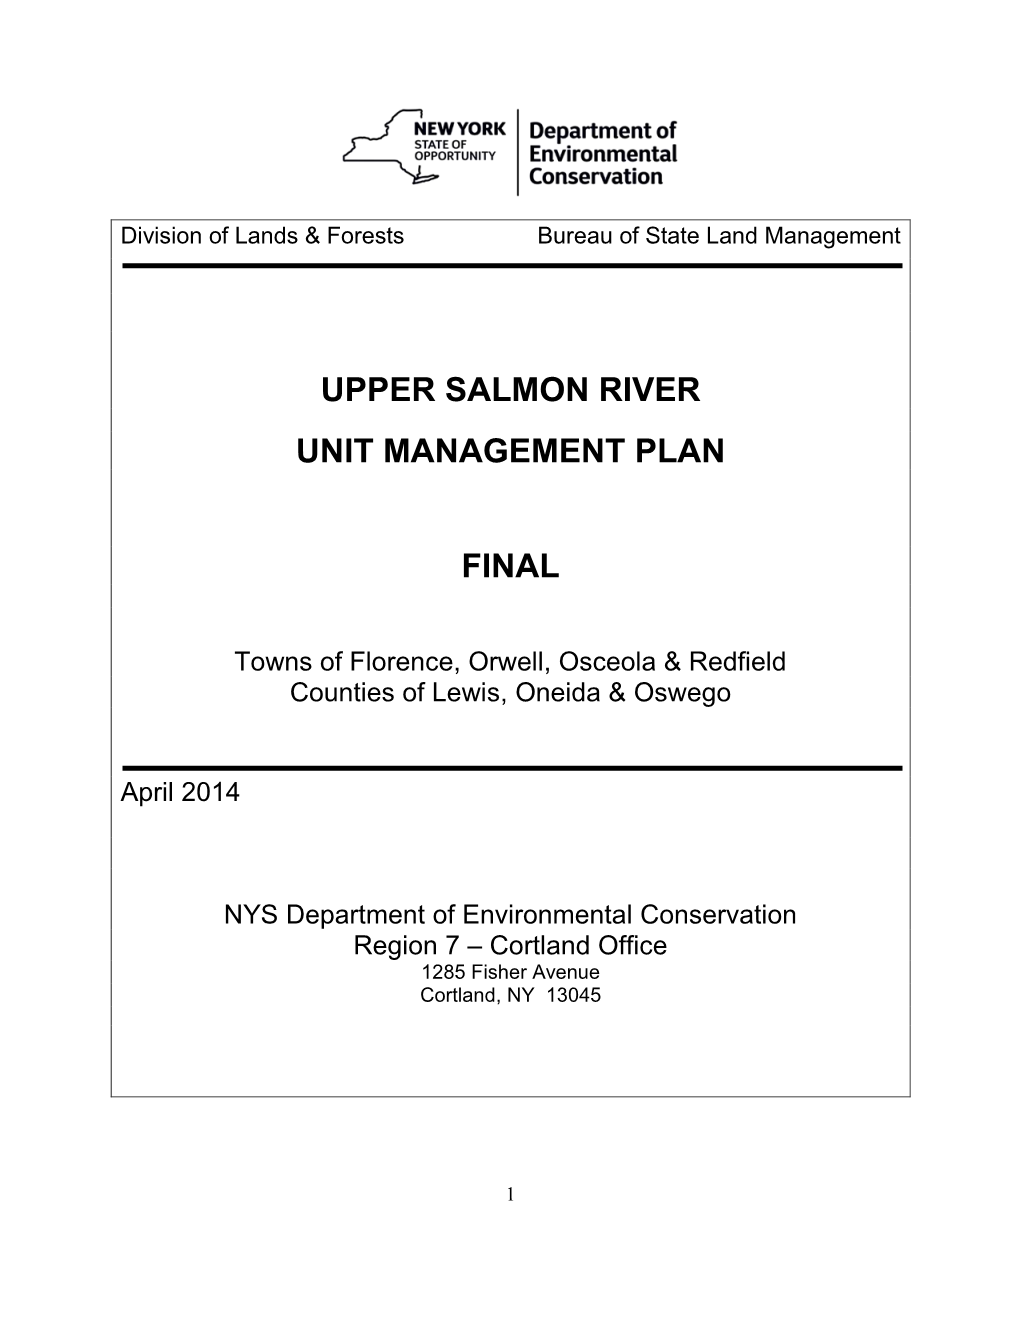 Upper Salmon River Unit Management Plan